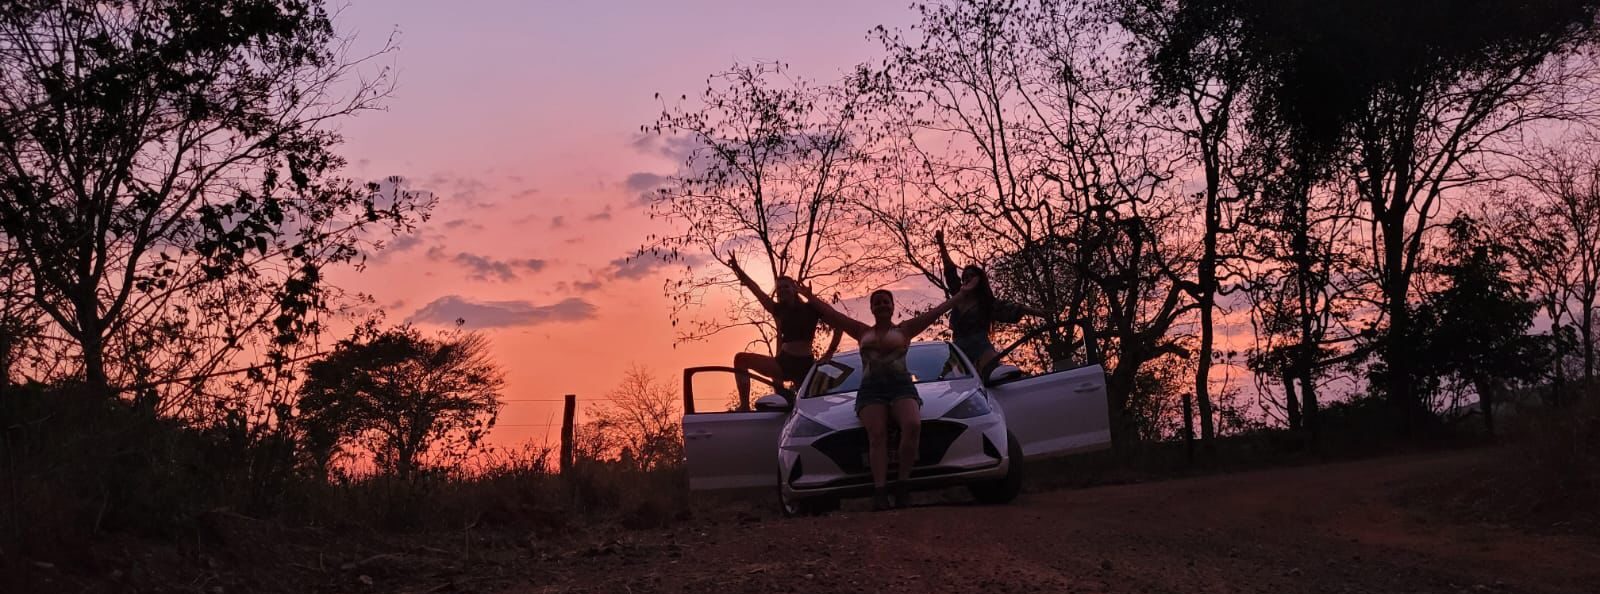 Pôr do sol do pantanal, carro GOL parado de frente com 3 três pessoas em pose no pantanal